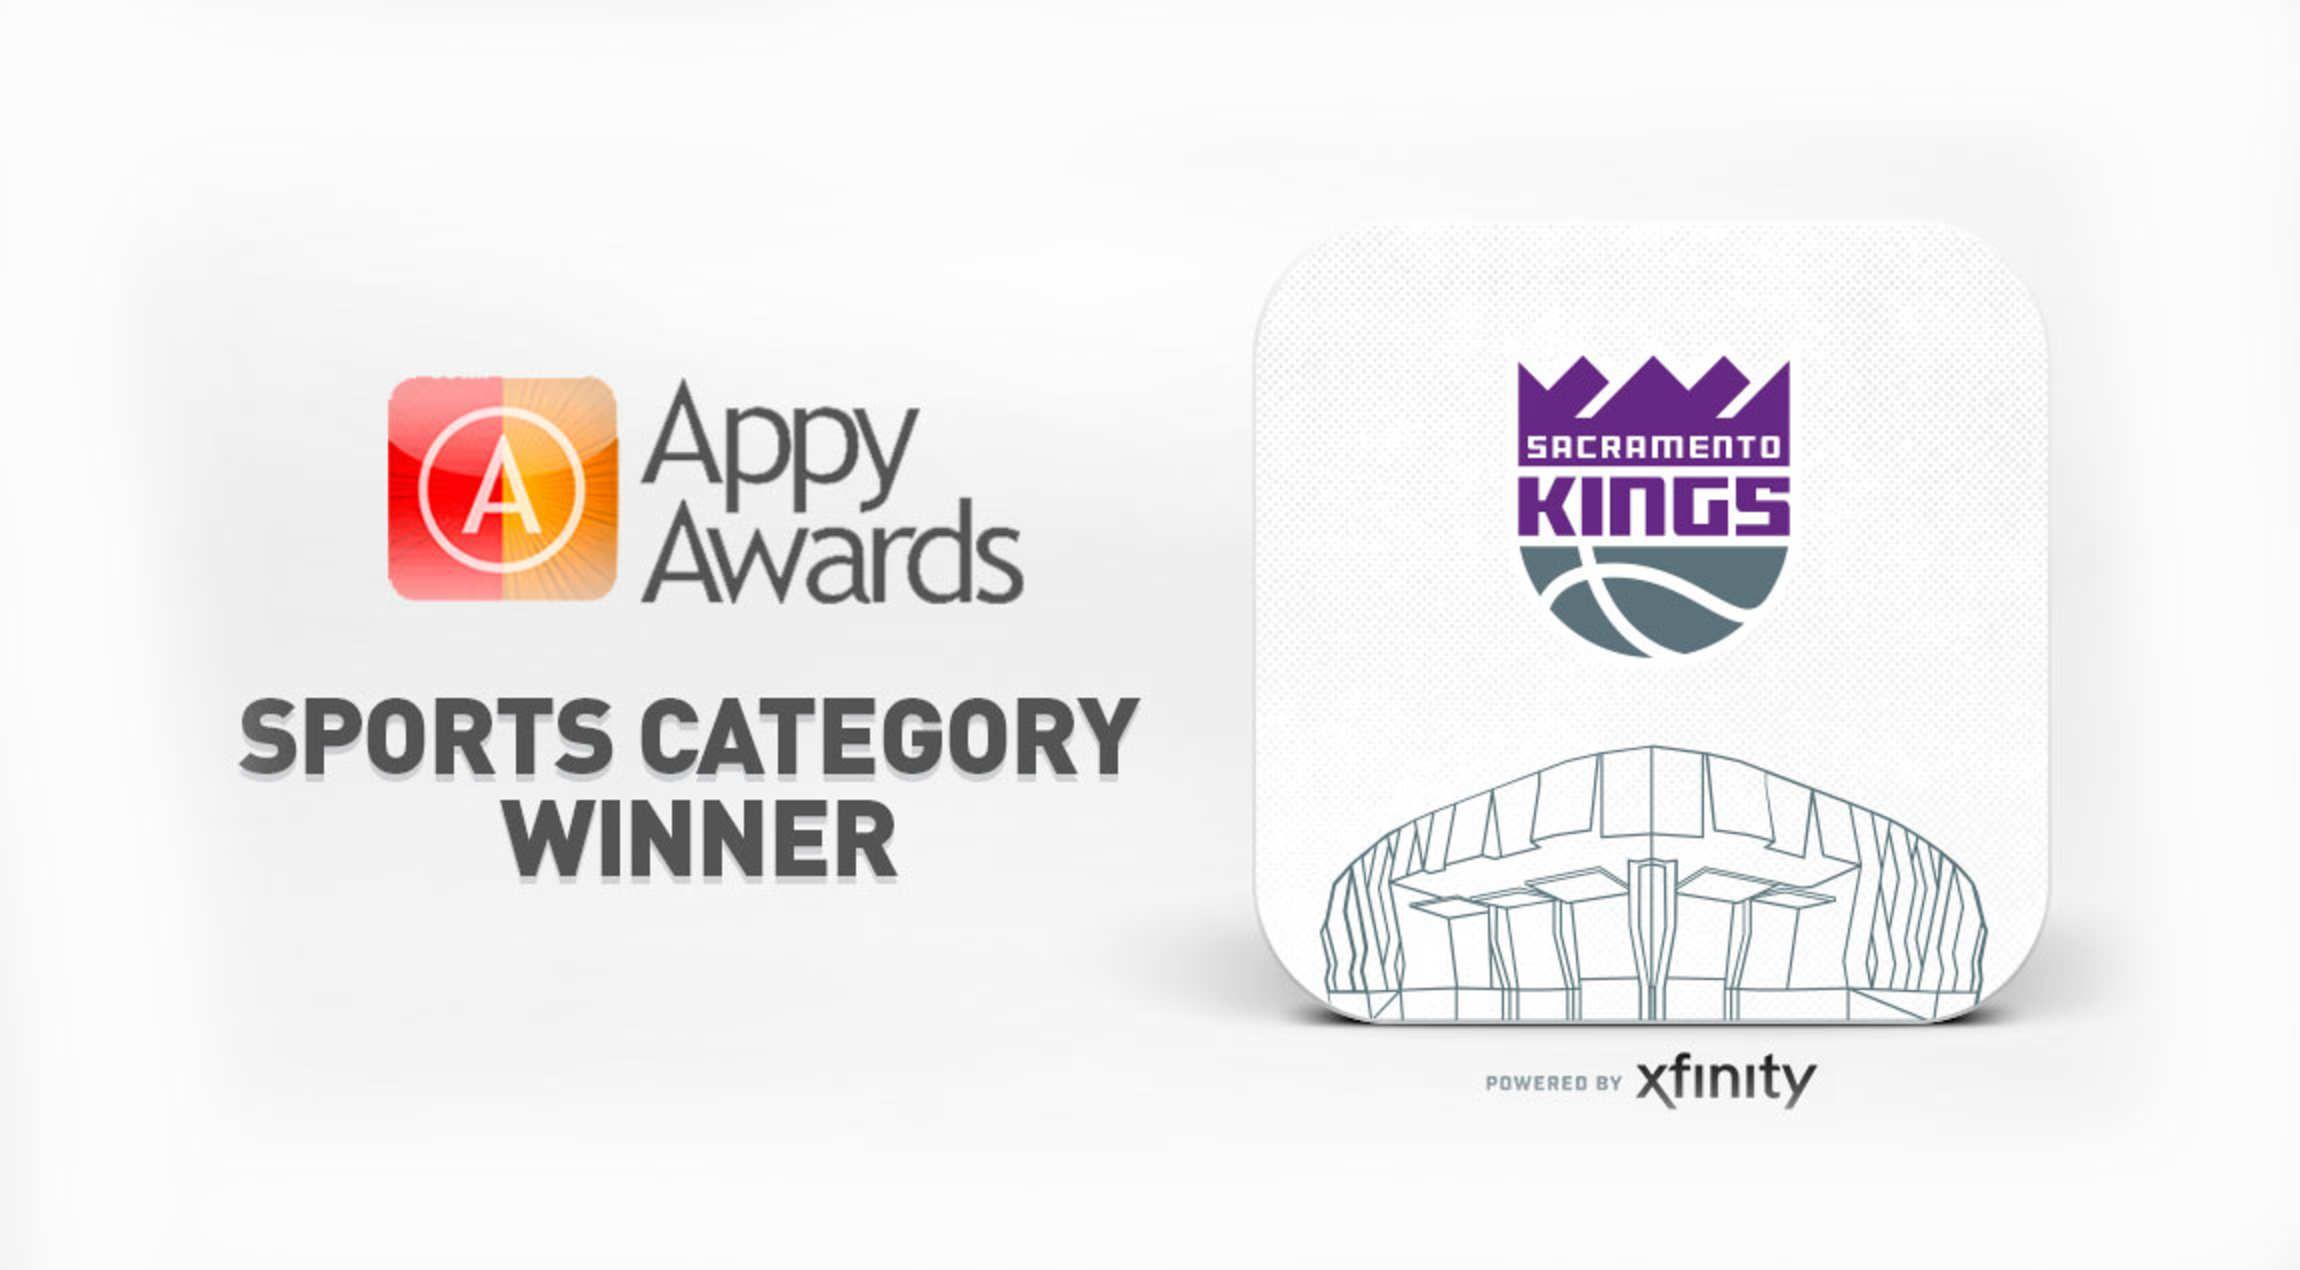 Golden 1 Logo - Sacramento Kings + Golden 1 Center App Wins Industry Leading Award